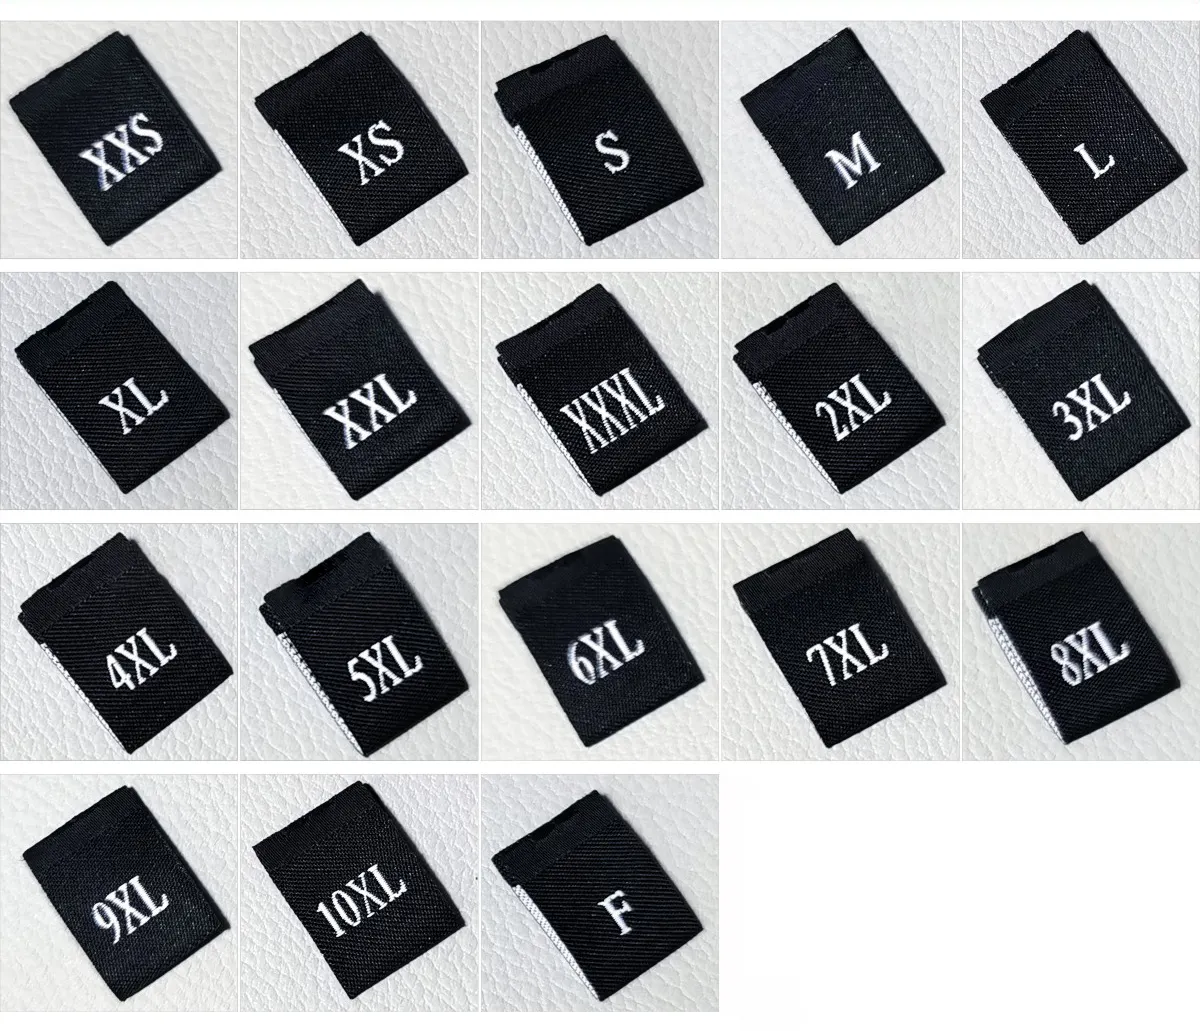 Toptan küçük siyah boyut etiketleri S M L XL XXL XXXL beyaz dokuma boyutu giysiler için etiket